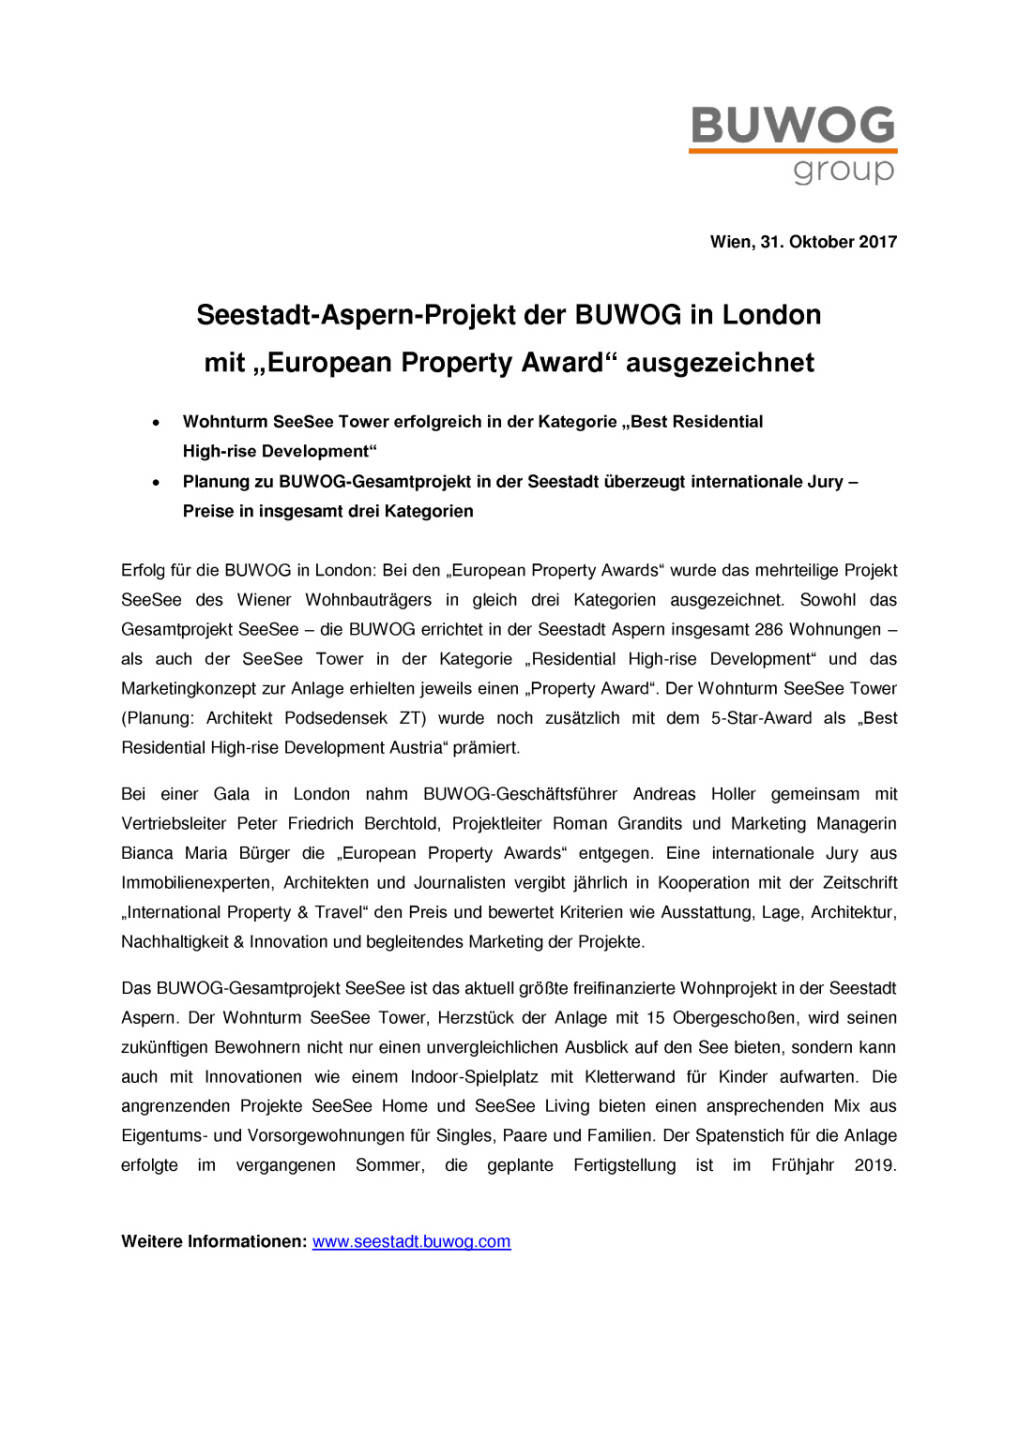 Seestadt-Aspern-Projekt der Buwog in London mit „European Property Award“ ausgezeichnet, Seite 1/2, komplettes Dokument unter http://boerse-social.com/static/uploads/file_2383_seestadt-aspern-projekt_der_buwog_in_london_mit_european_property_award_ausgezeichnet.pdf